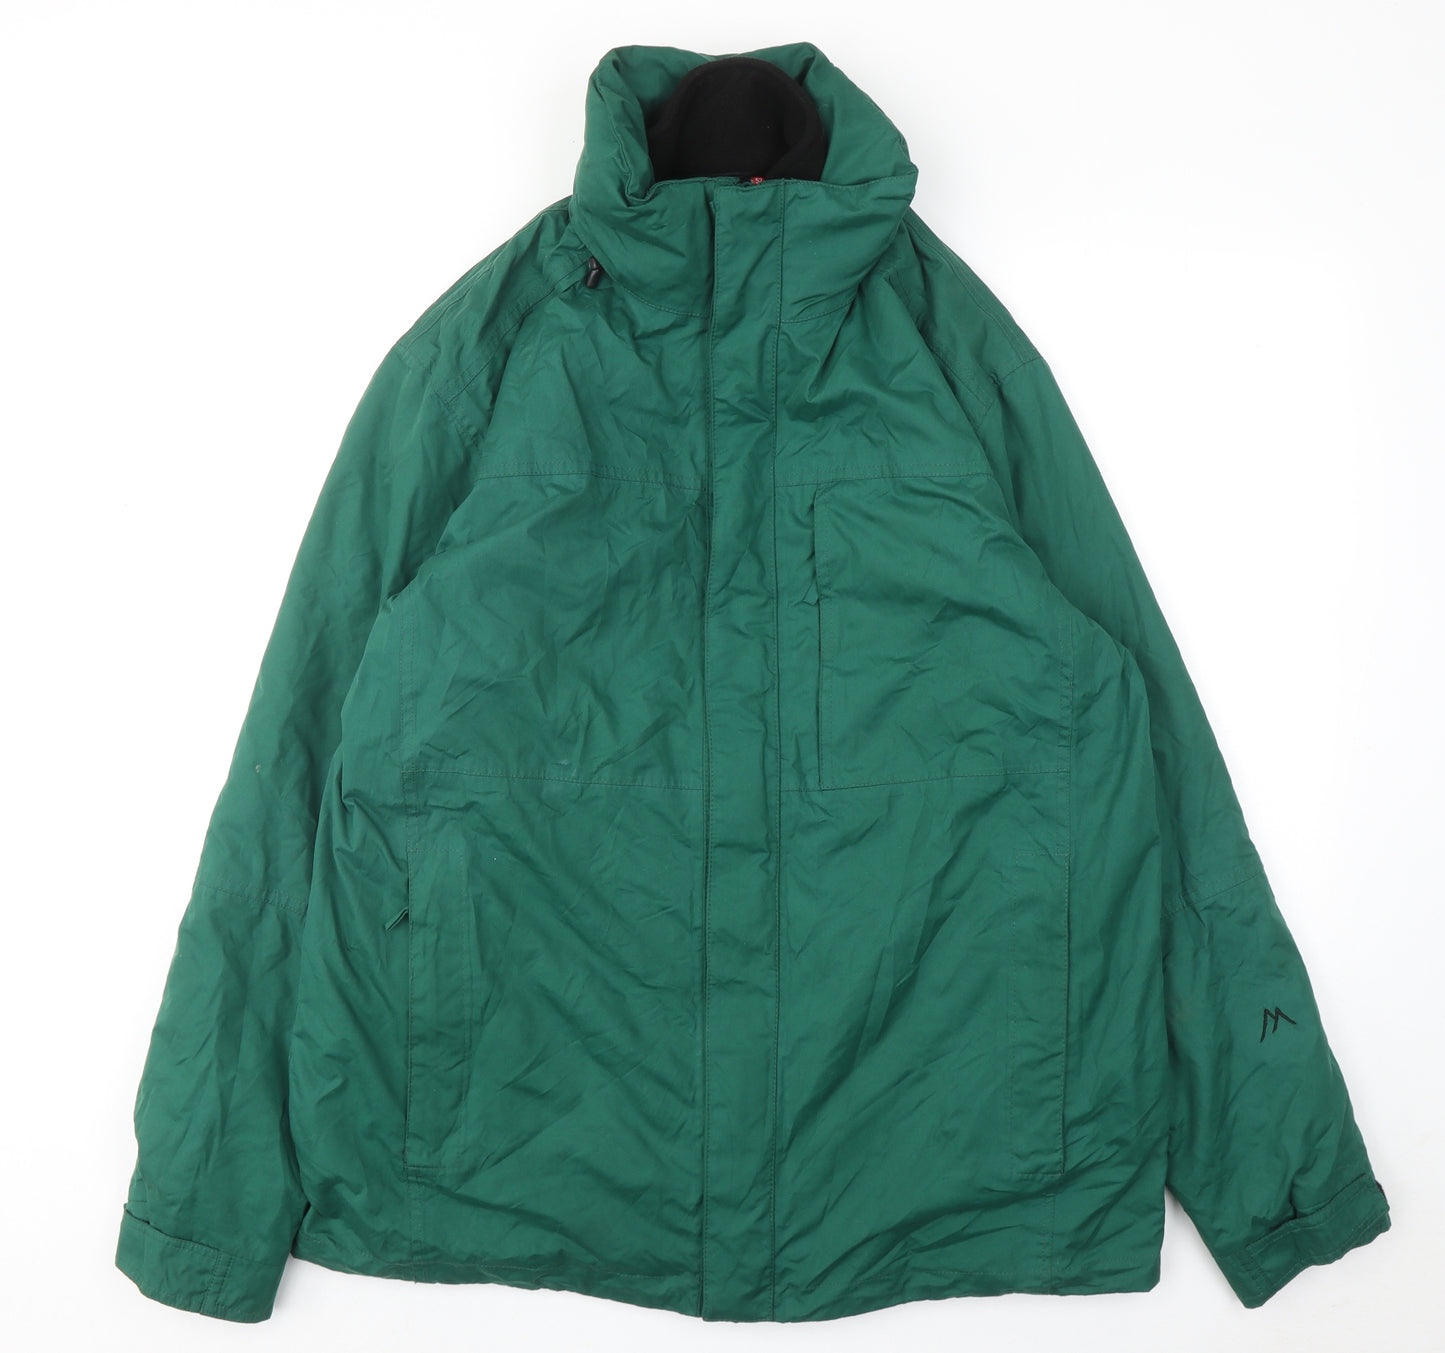 Tomas Maier Mens Green Windbreaker Jacket Size L Zip